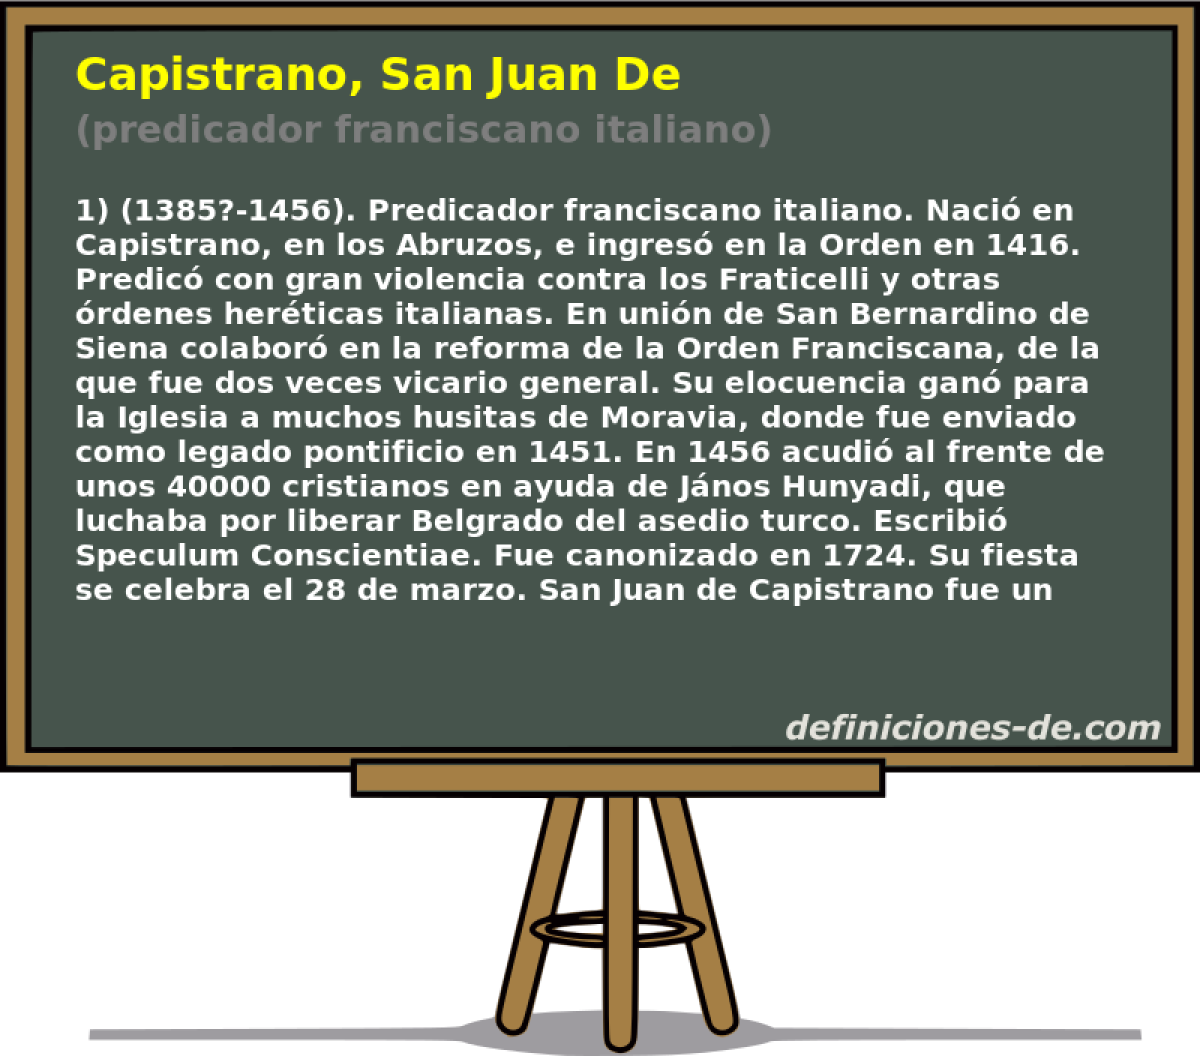 Capistrano, San Juan De (predicador franciscano italiano)